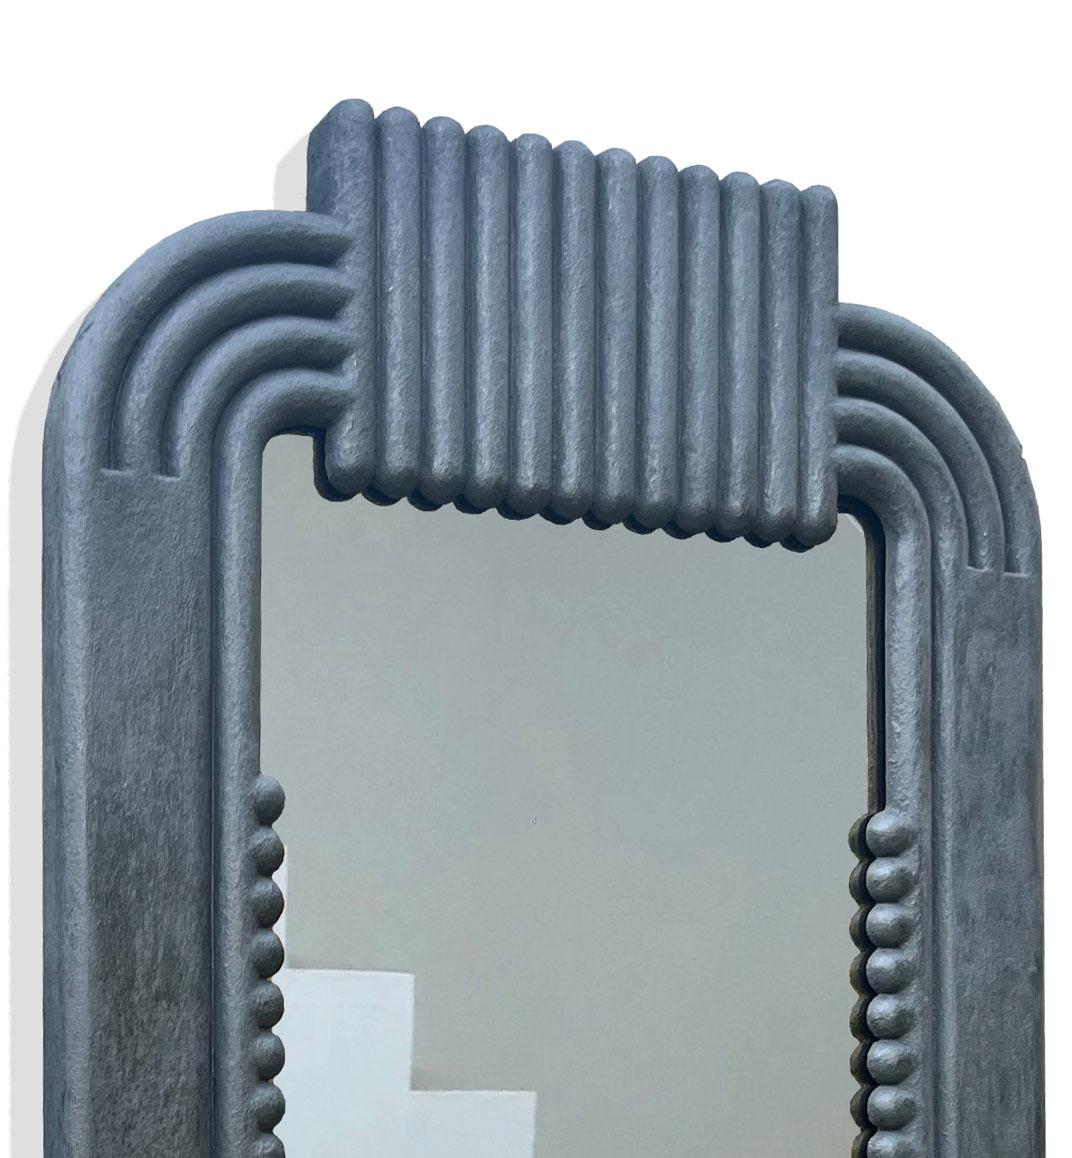 Dieser minimalistische, handgegossene, verstärkte Gipsspiegel ist ein hochwertiges Ian C.R. Martin Studio Stück. Er zeichnet sich durch ein auffälliges, konzentrisches Design aus, das im Hintergußverfahren hergestellt wird und den Spiegel nahtlos in